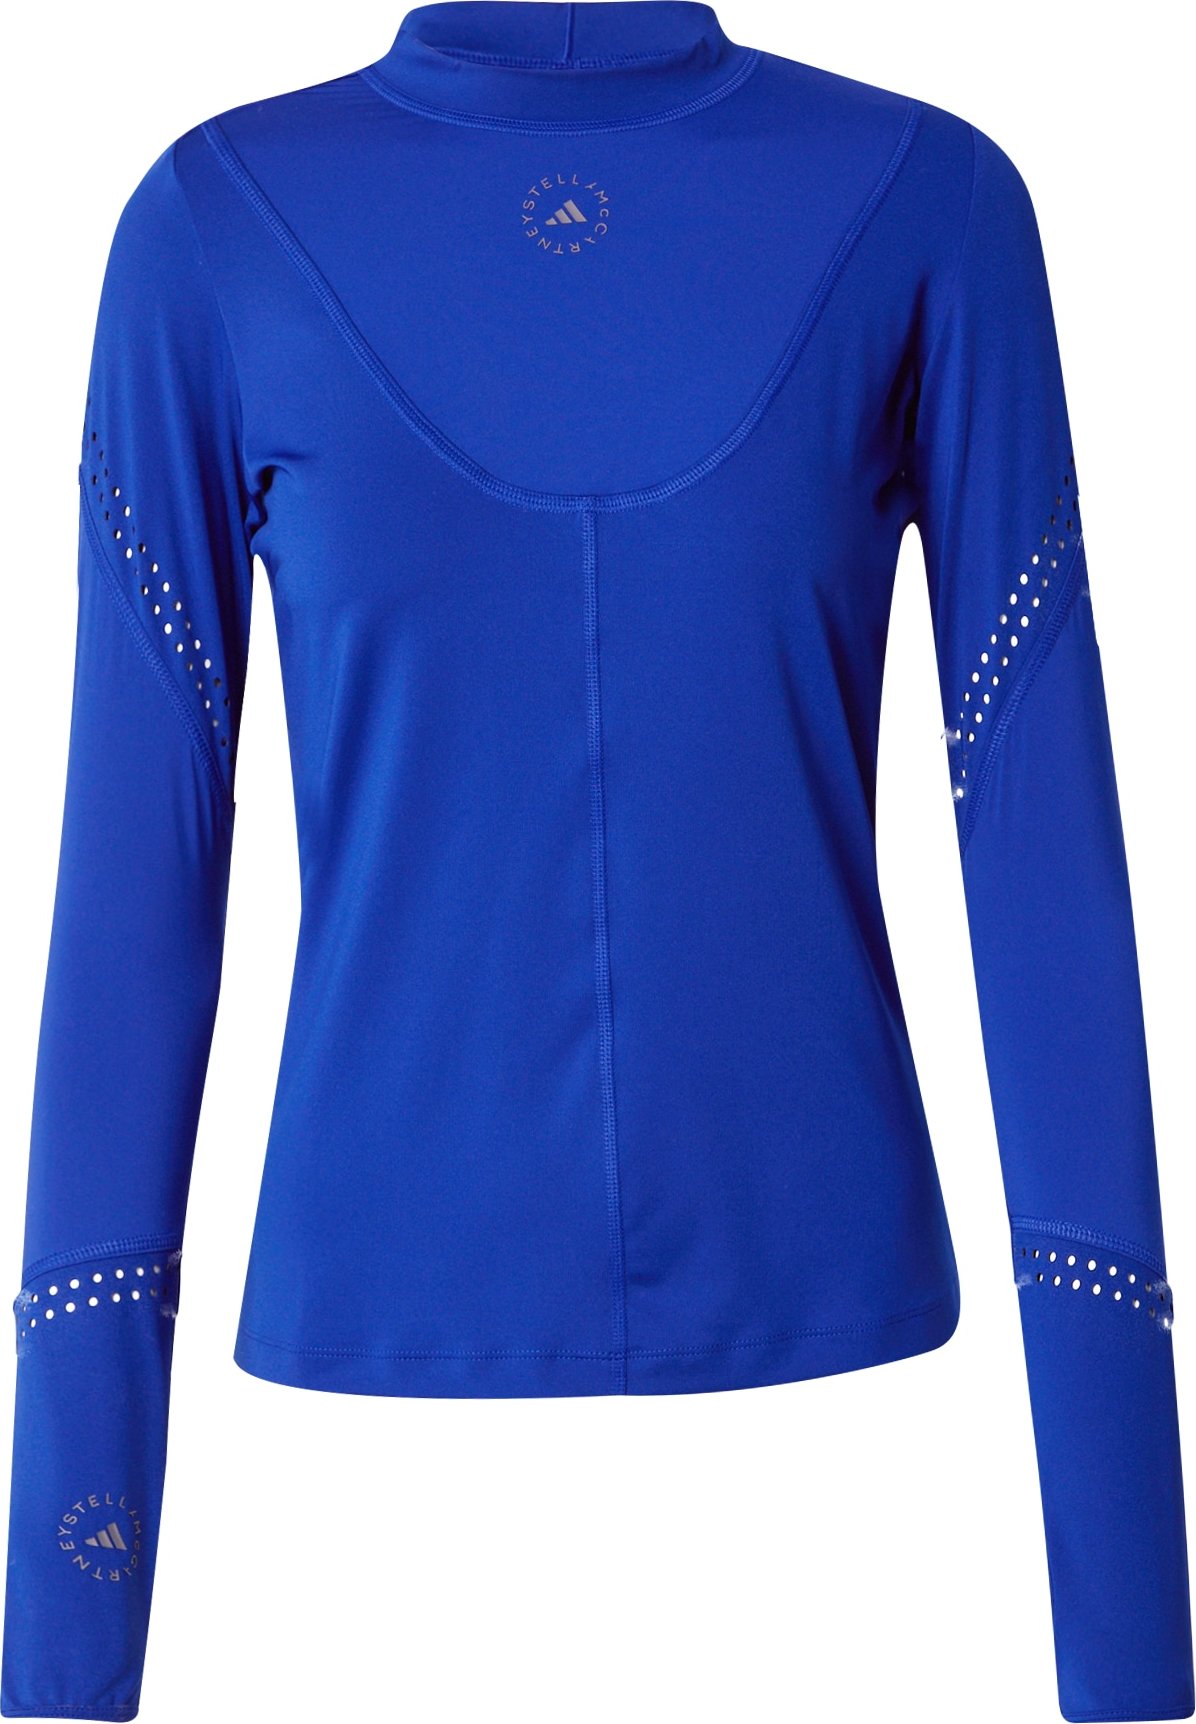 Funkční tričko 'Truepurpose' adidas by stella mccartney královská modrá